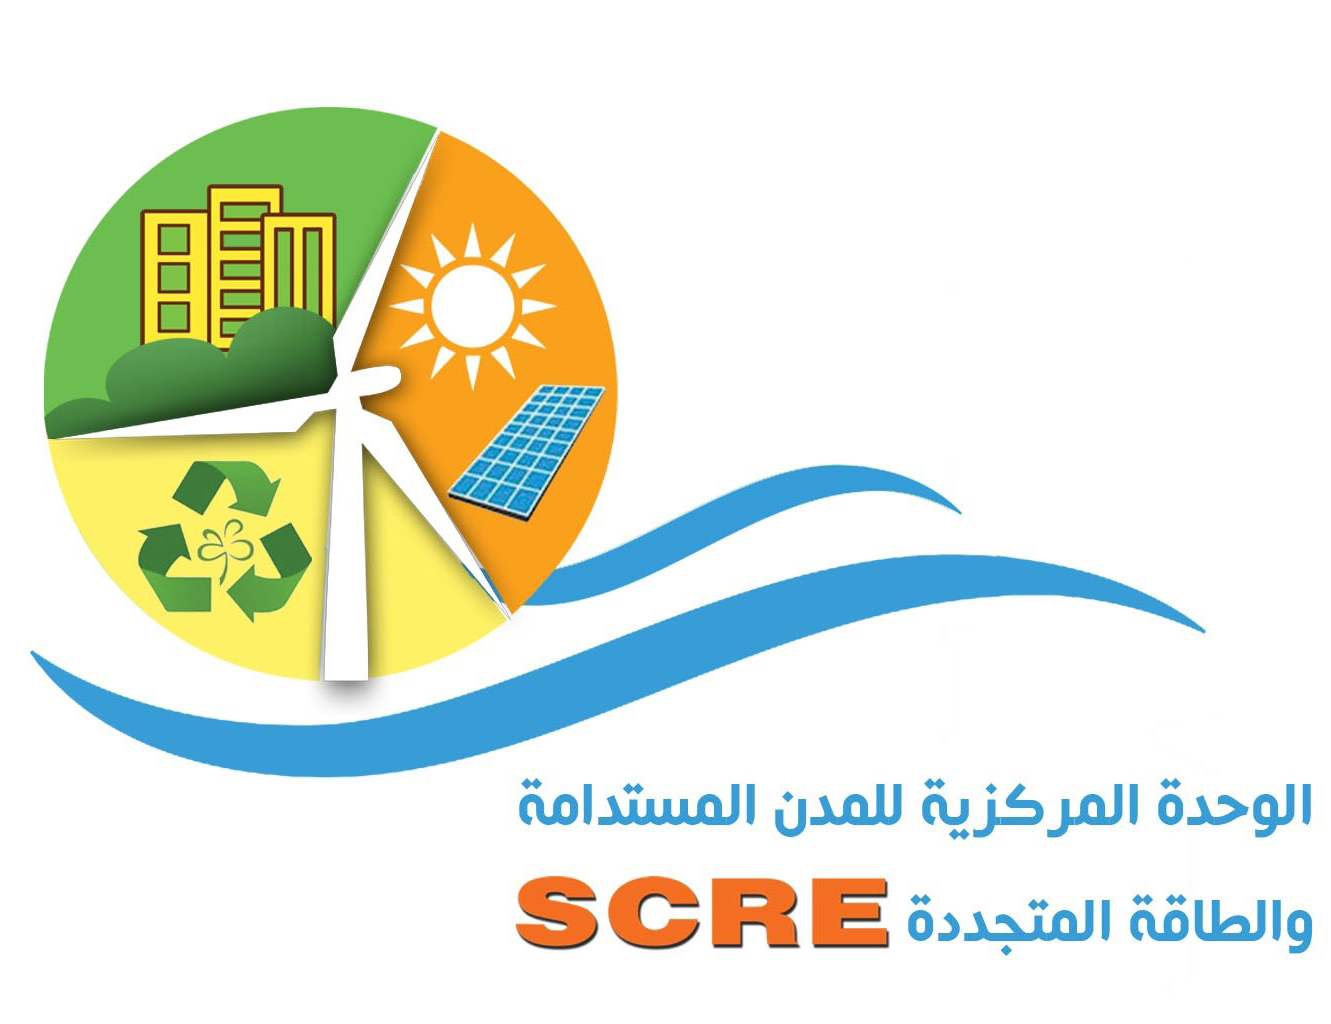 المؤتمر الأول للوحدة المركزية للمدن المستدامة والطاقة المتجددة "الطاقة الشمسية فى المدن الجديدة بين النظرية والتطبيق"